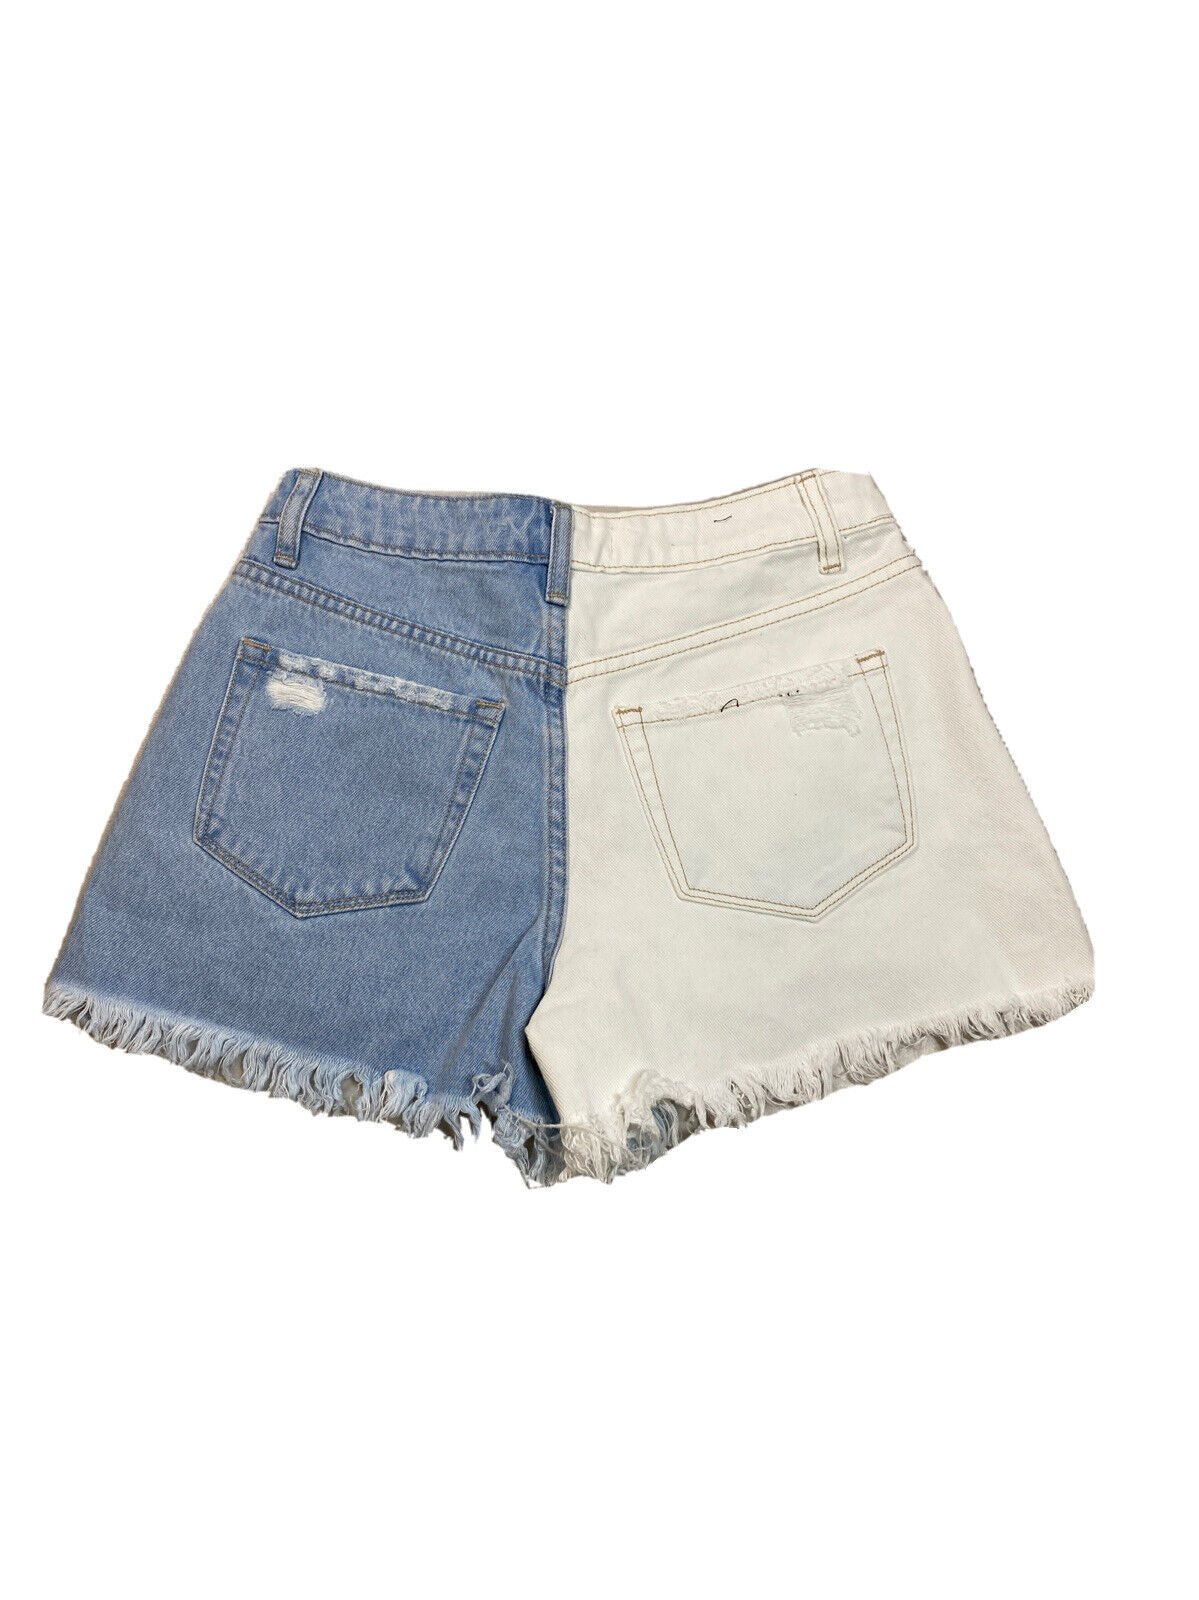 NUEVOS pantalones cortos recortados de mezclilla azul y blanco con bloques de color Vervet para mujer - XS